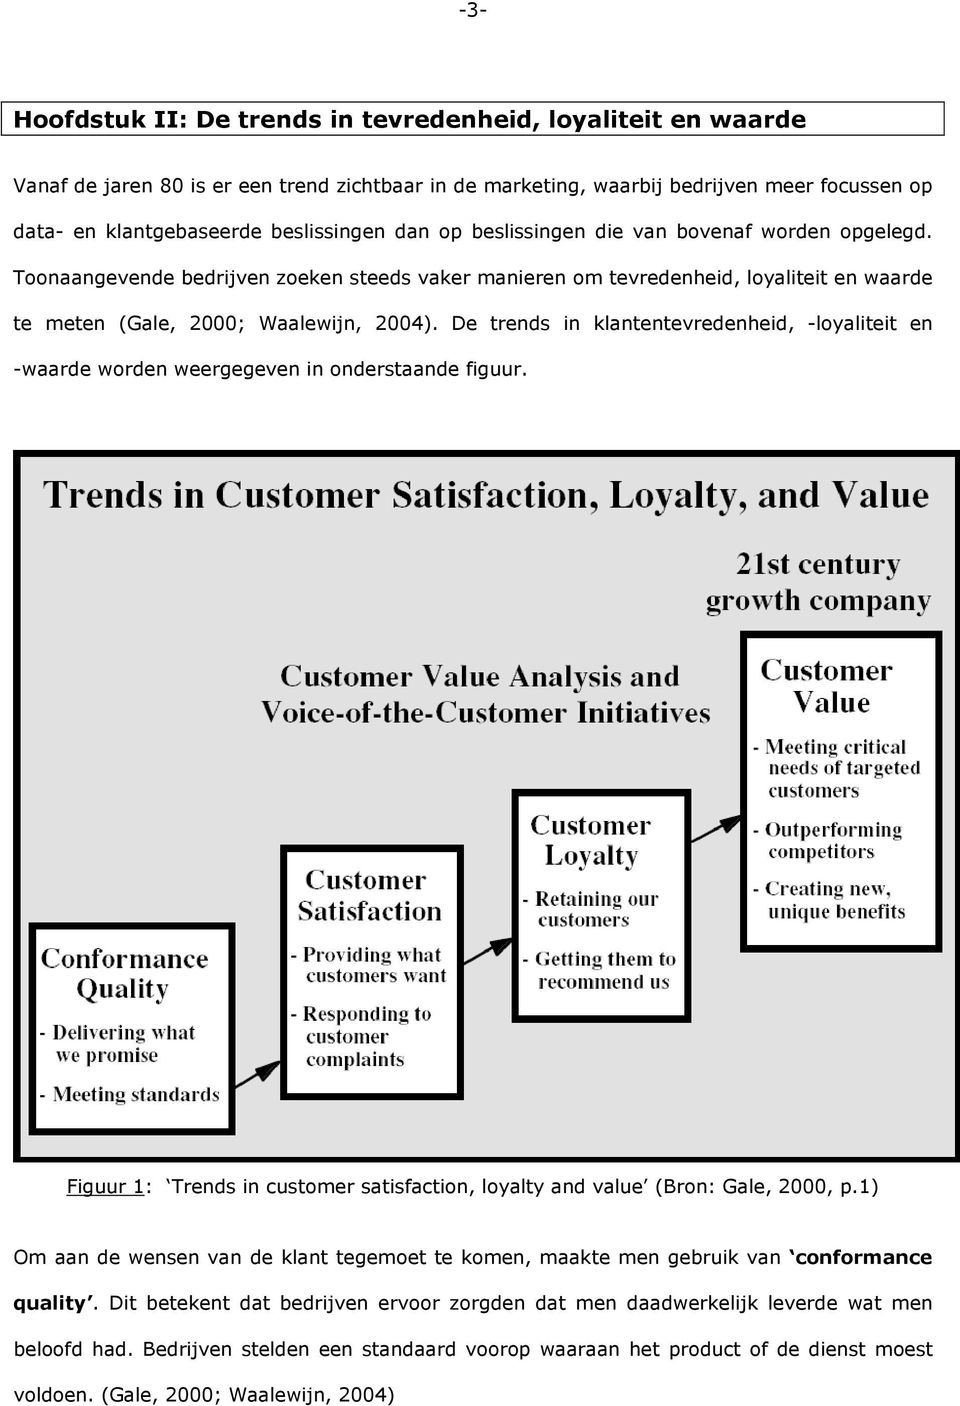 De trends in klantentevredenheid, -loyaliteit en -waarde worden weergegeven in onderstaande figuur. Figuur 1: Trends in customer satisfaction, loyalty and value (Bron: Gale, 2000, p.